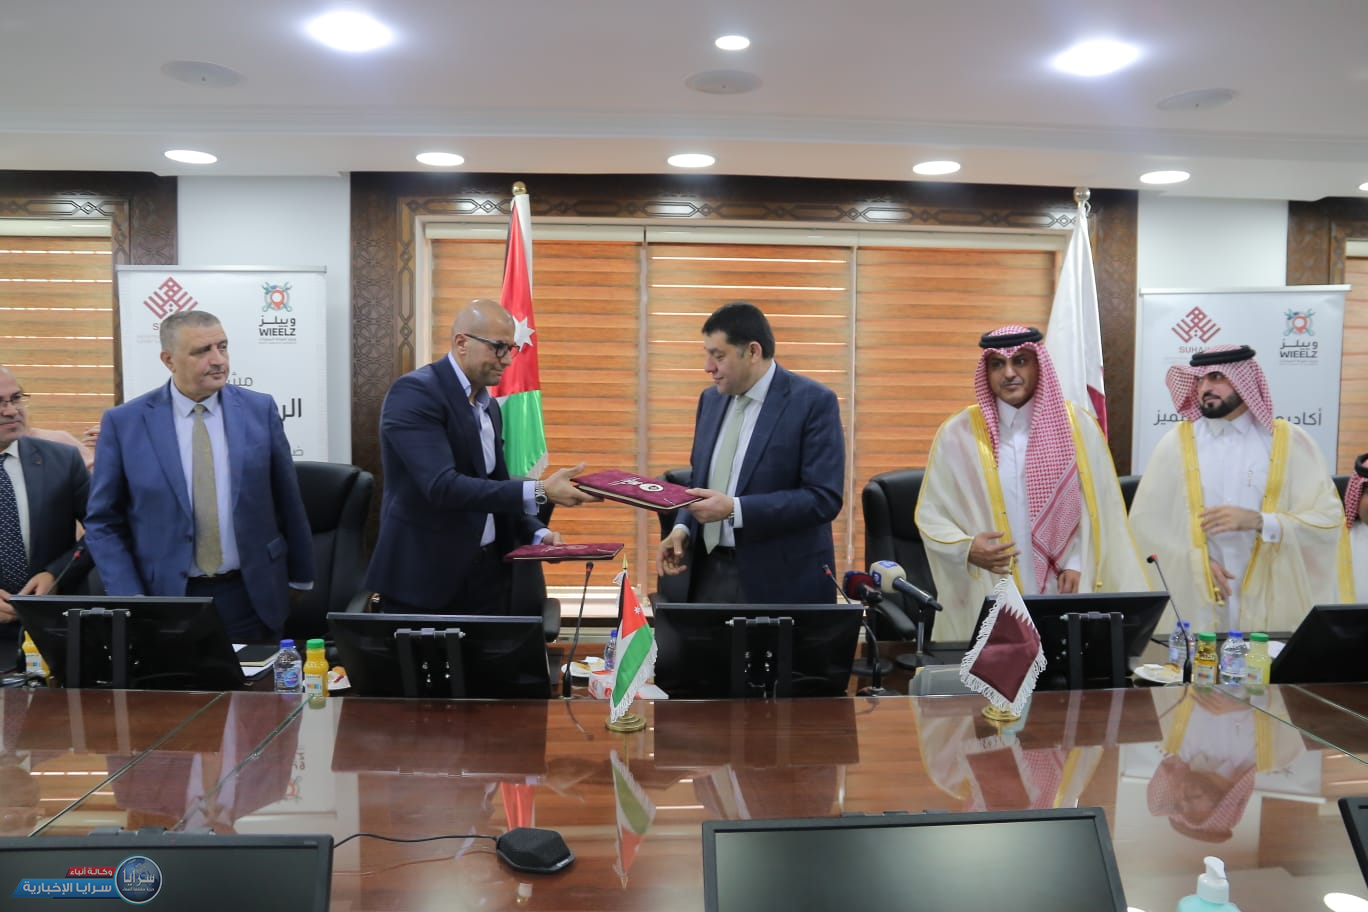 العمل تعلن إعادة تفعيل منصة "سجل" مع قطر لتشغيل الأردنيين